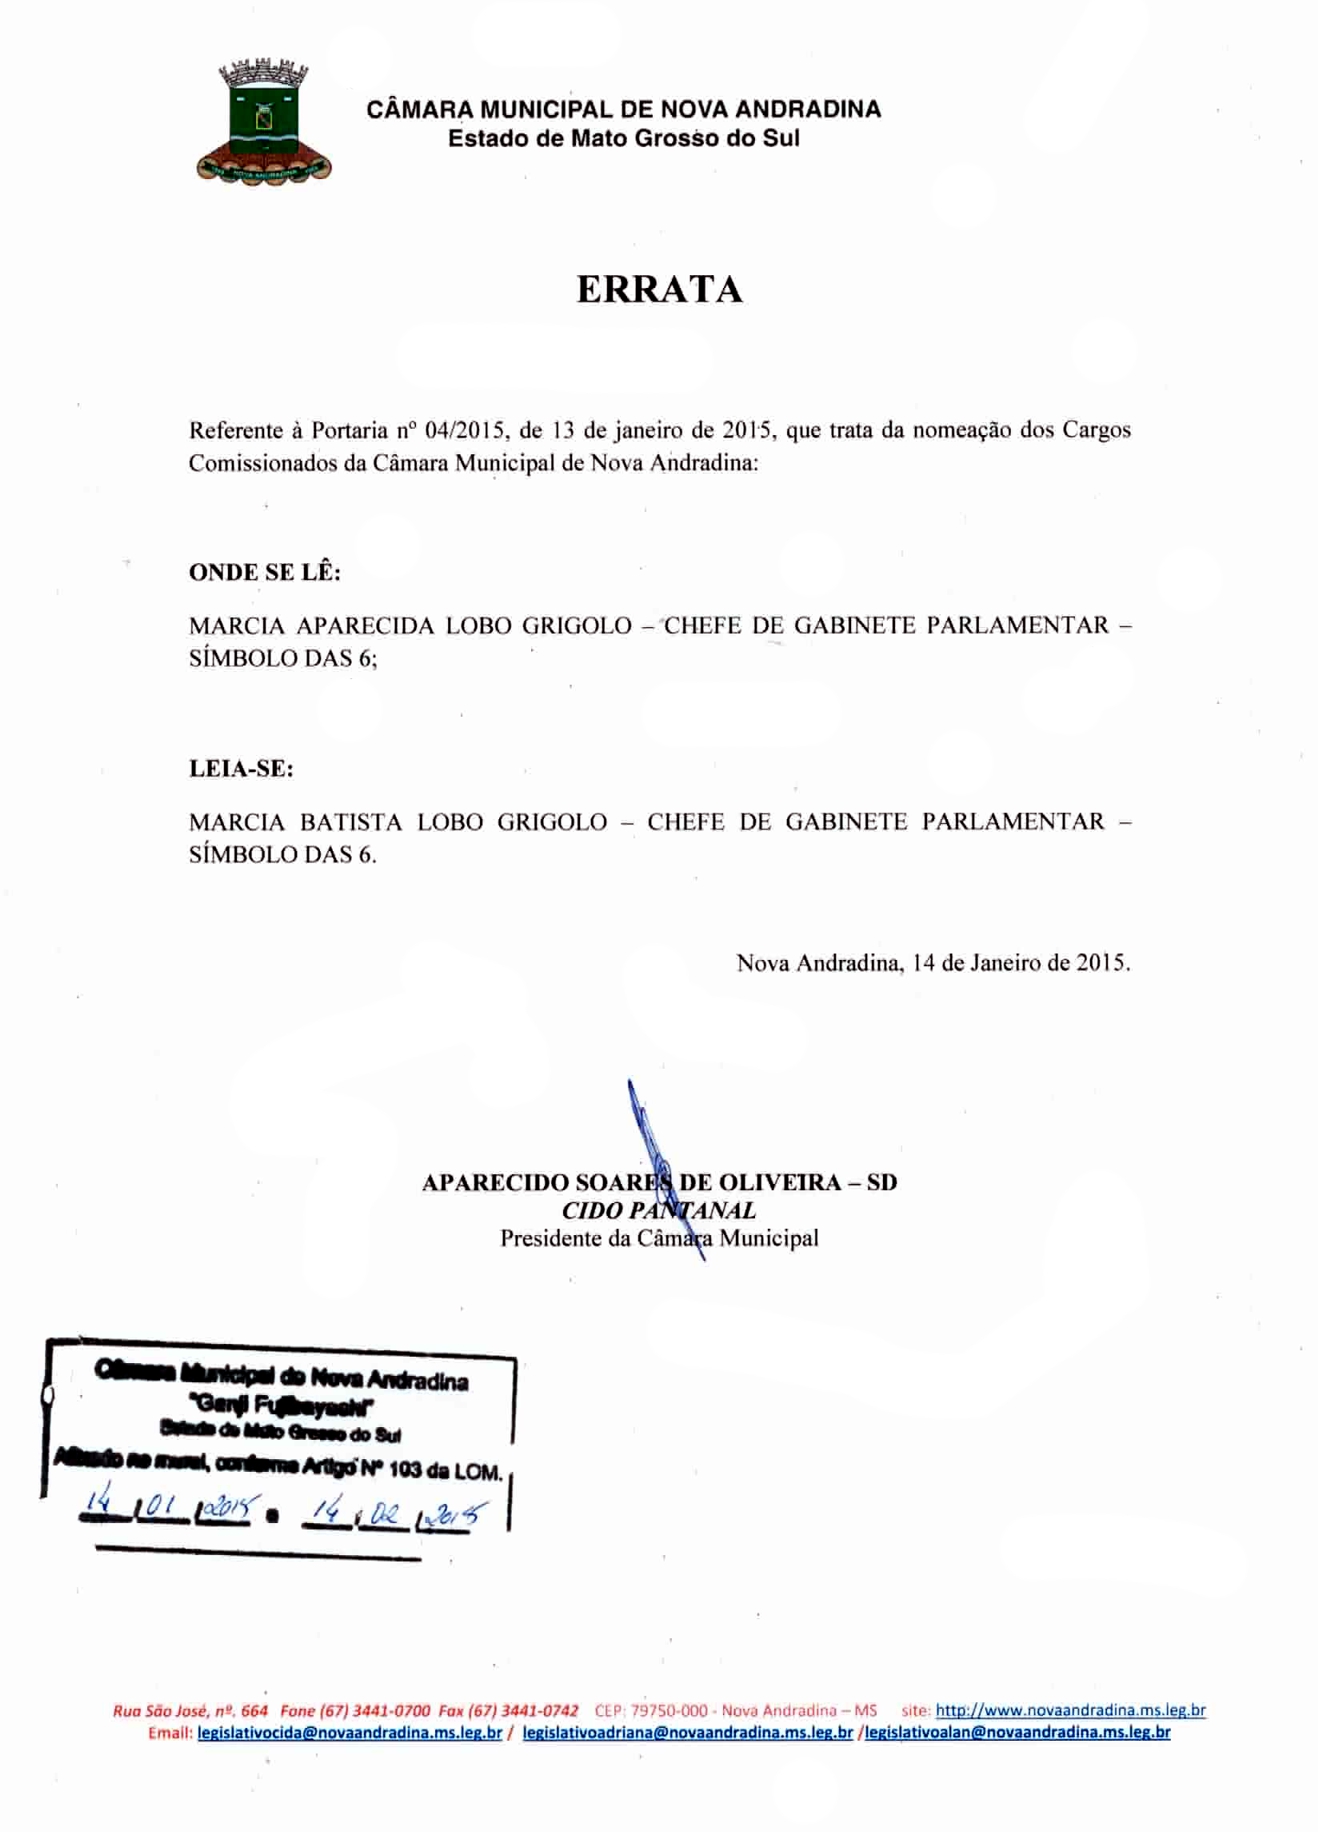 Errata Portaria 04-2015.JPG